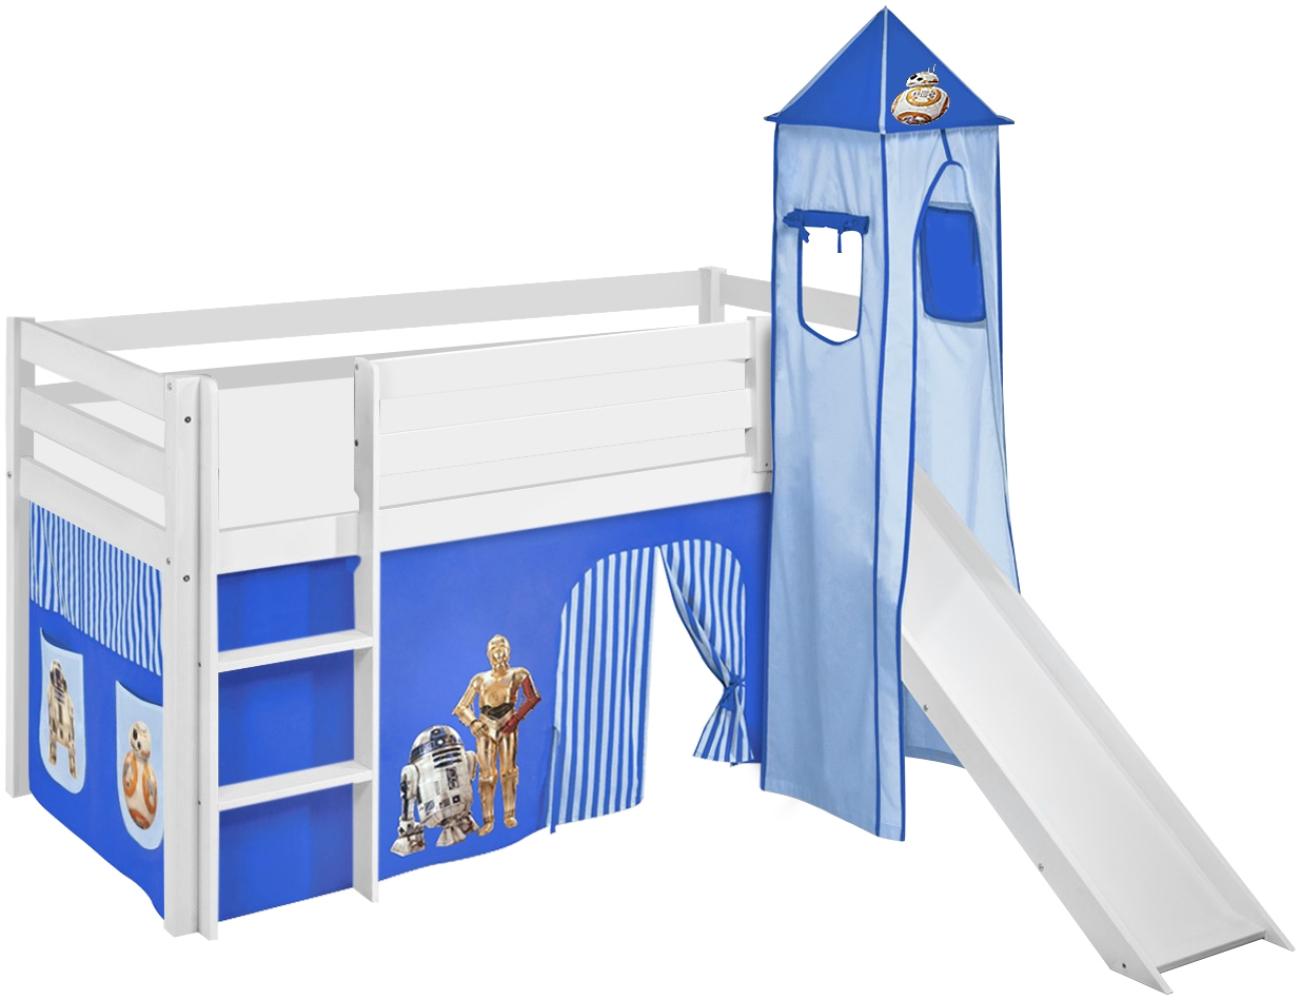 Lilokids 'Jelle' Spielbett 90 x 190 cm, Star Wars Blau, Kiefer massiv, mit Turm, Rutsche und Vorhang Bild 1